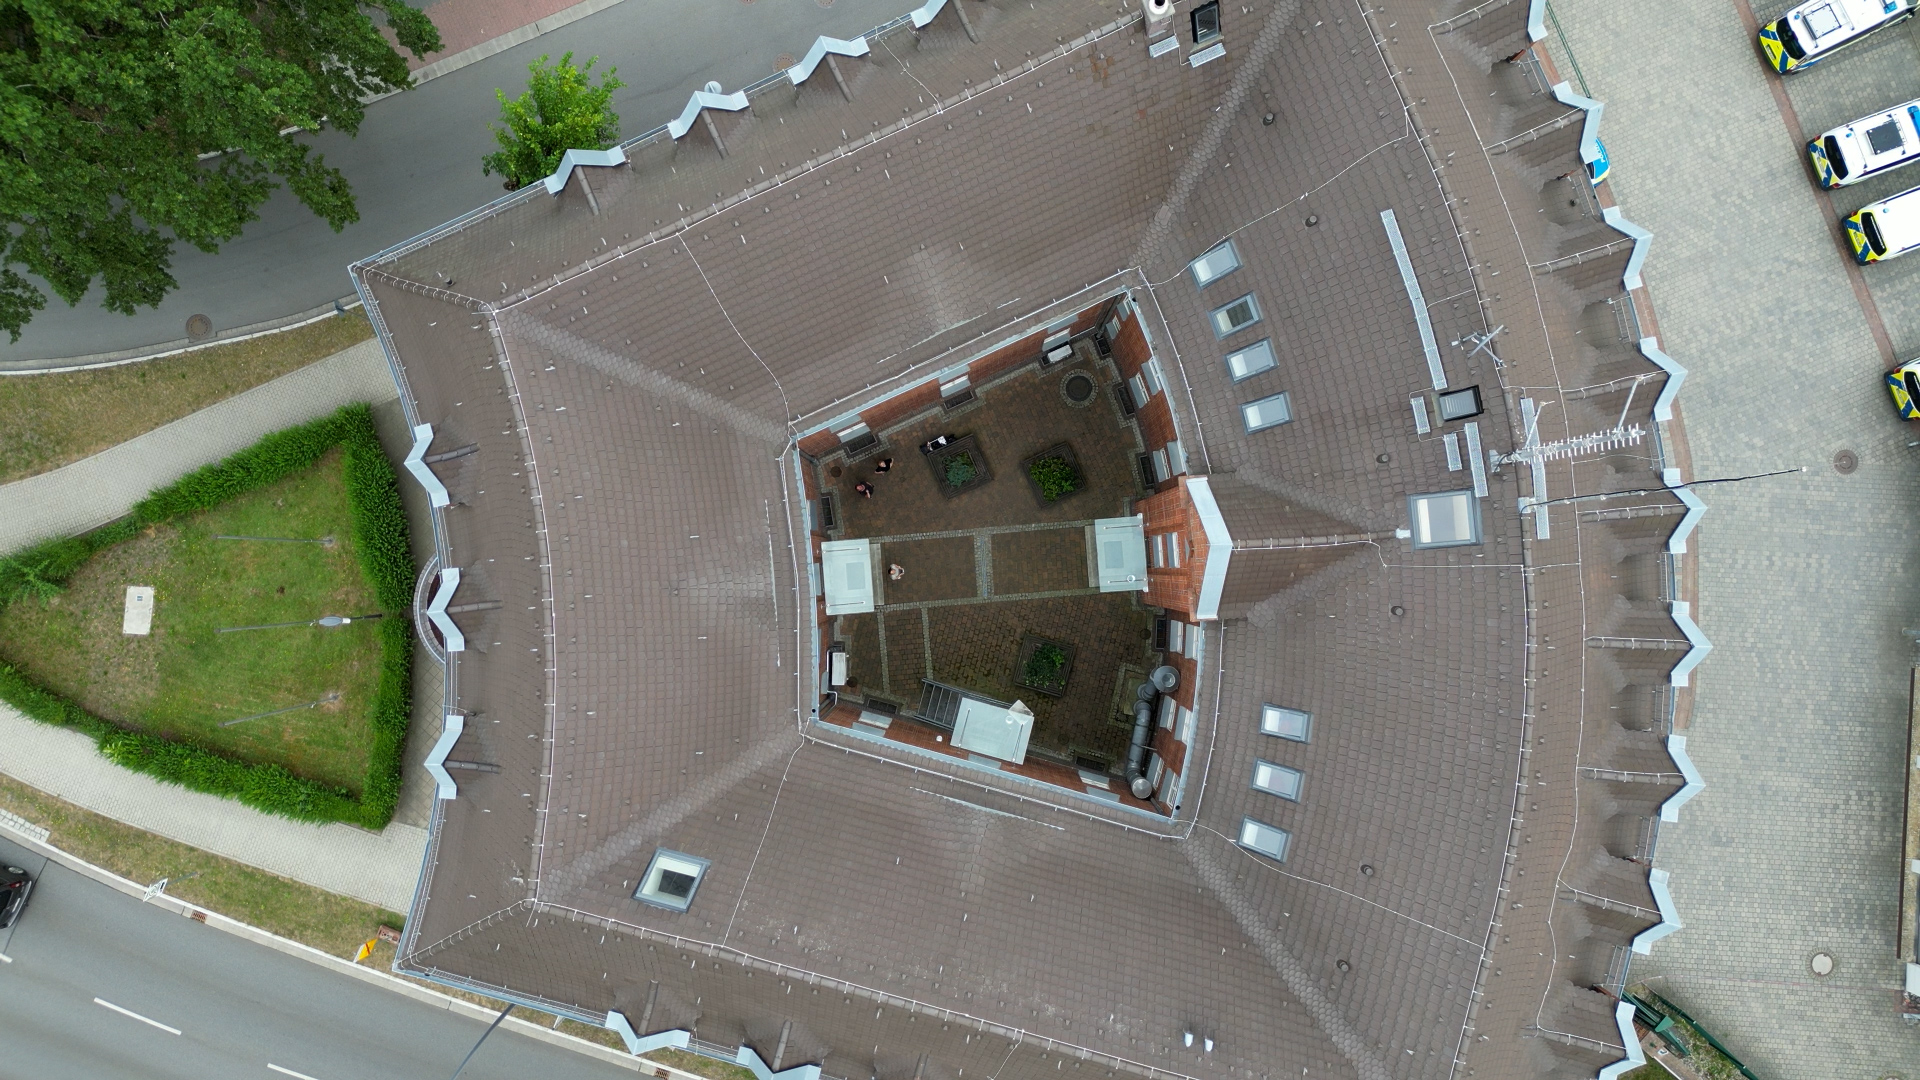 Bild: Luftbild des Polizeigebäudes in Calau mit einem Innenhof